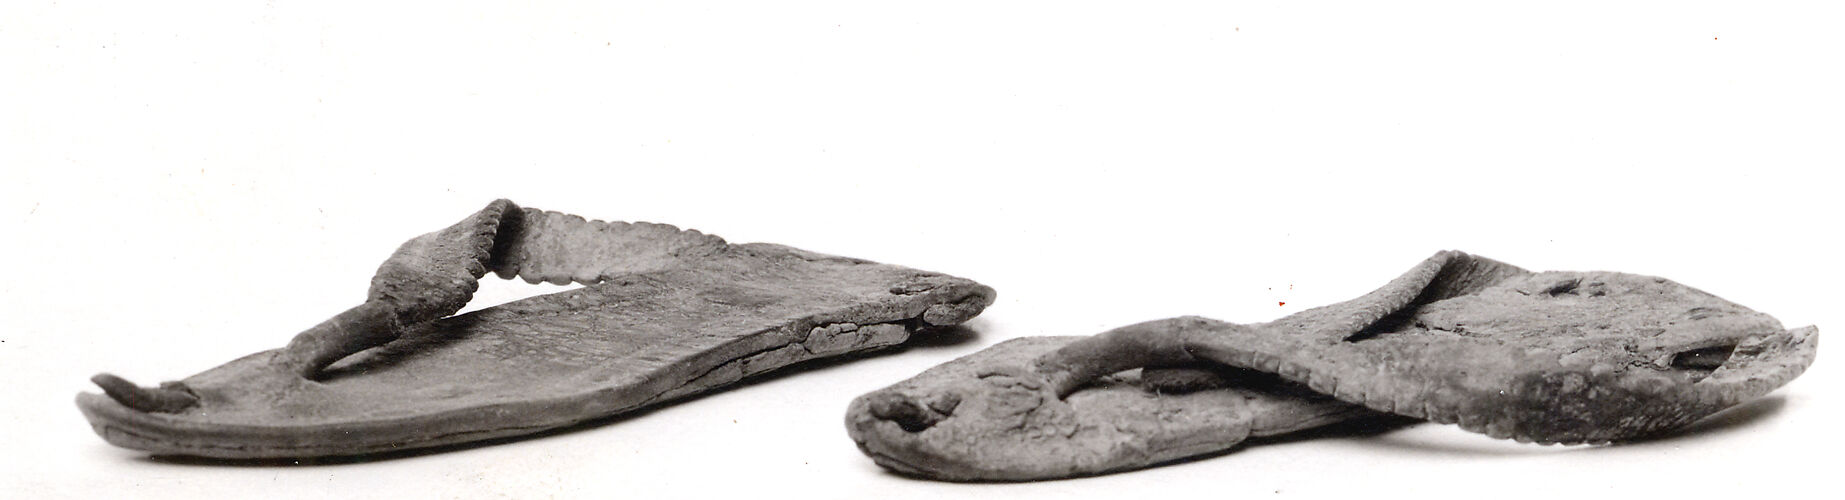 Pair of Child's Sandals